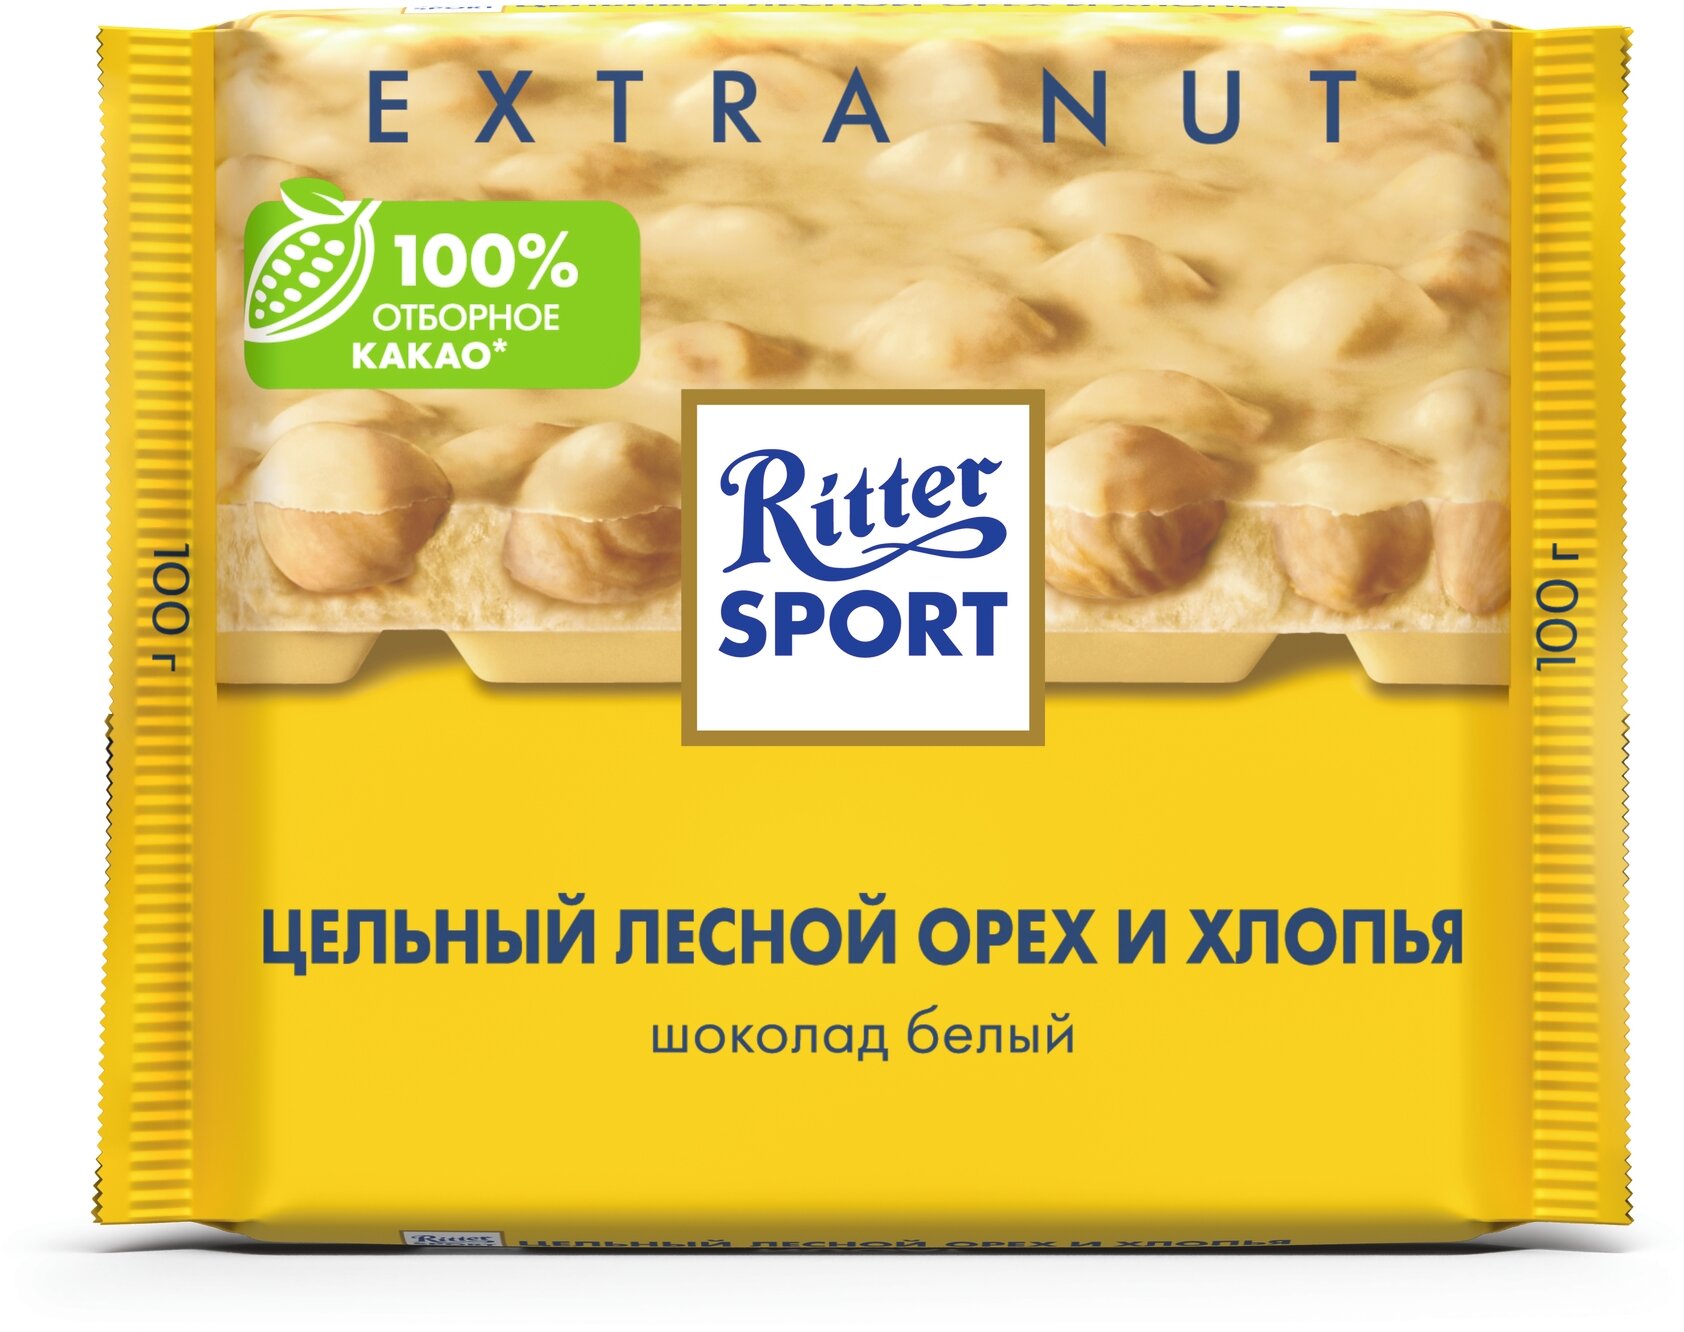 Шоколад Ritter Sport Extra Nut белый цельный лесной орех и хлопья